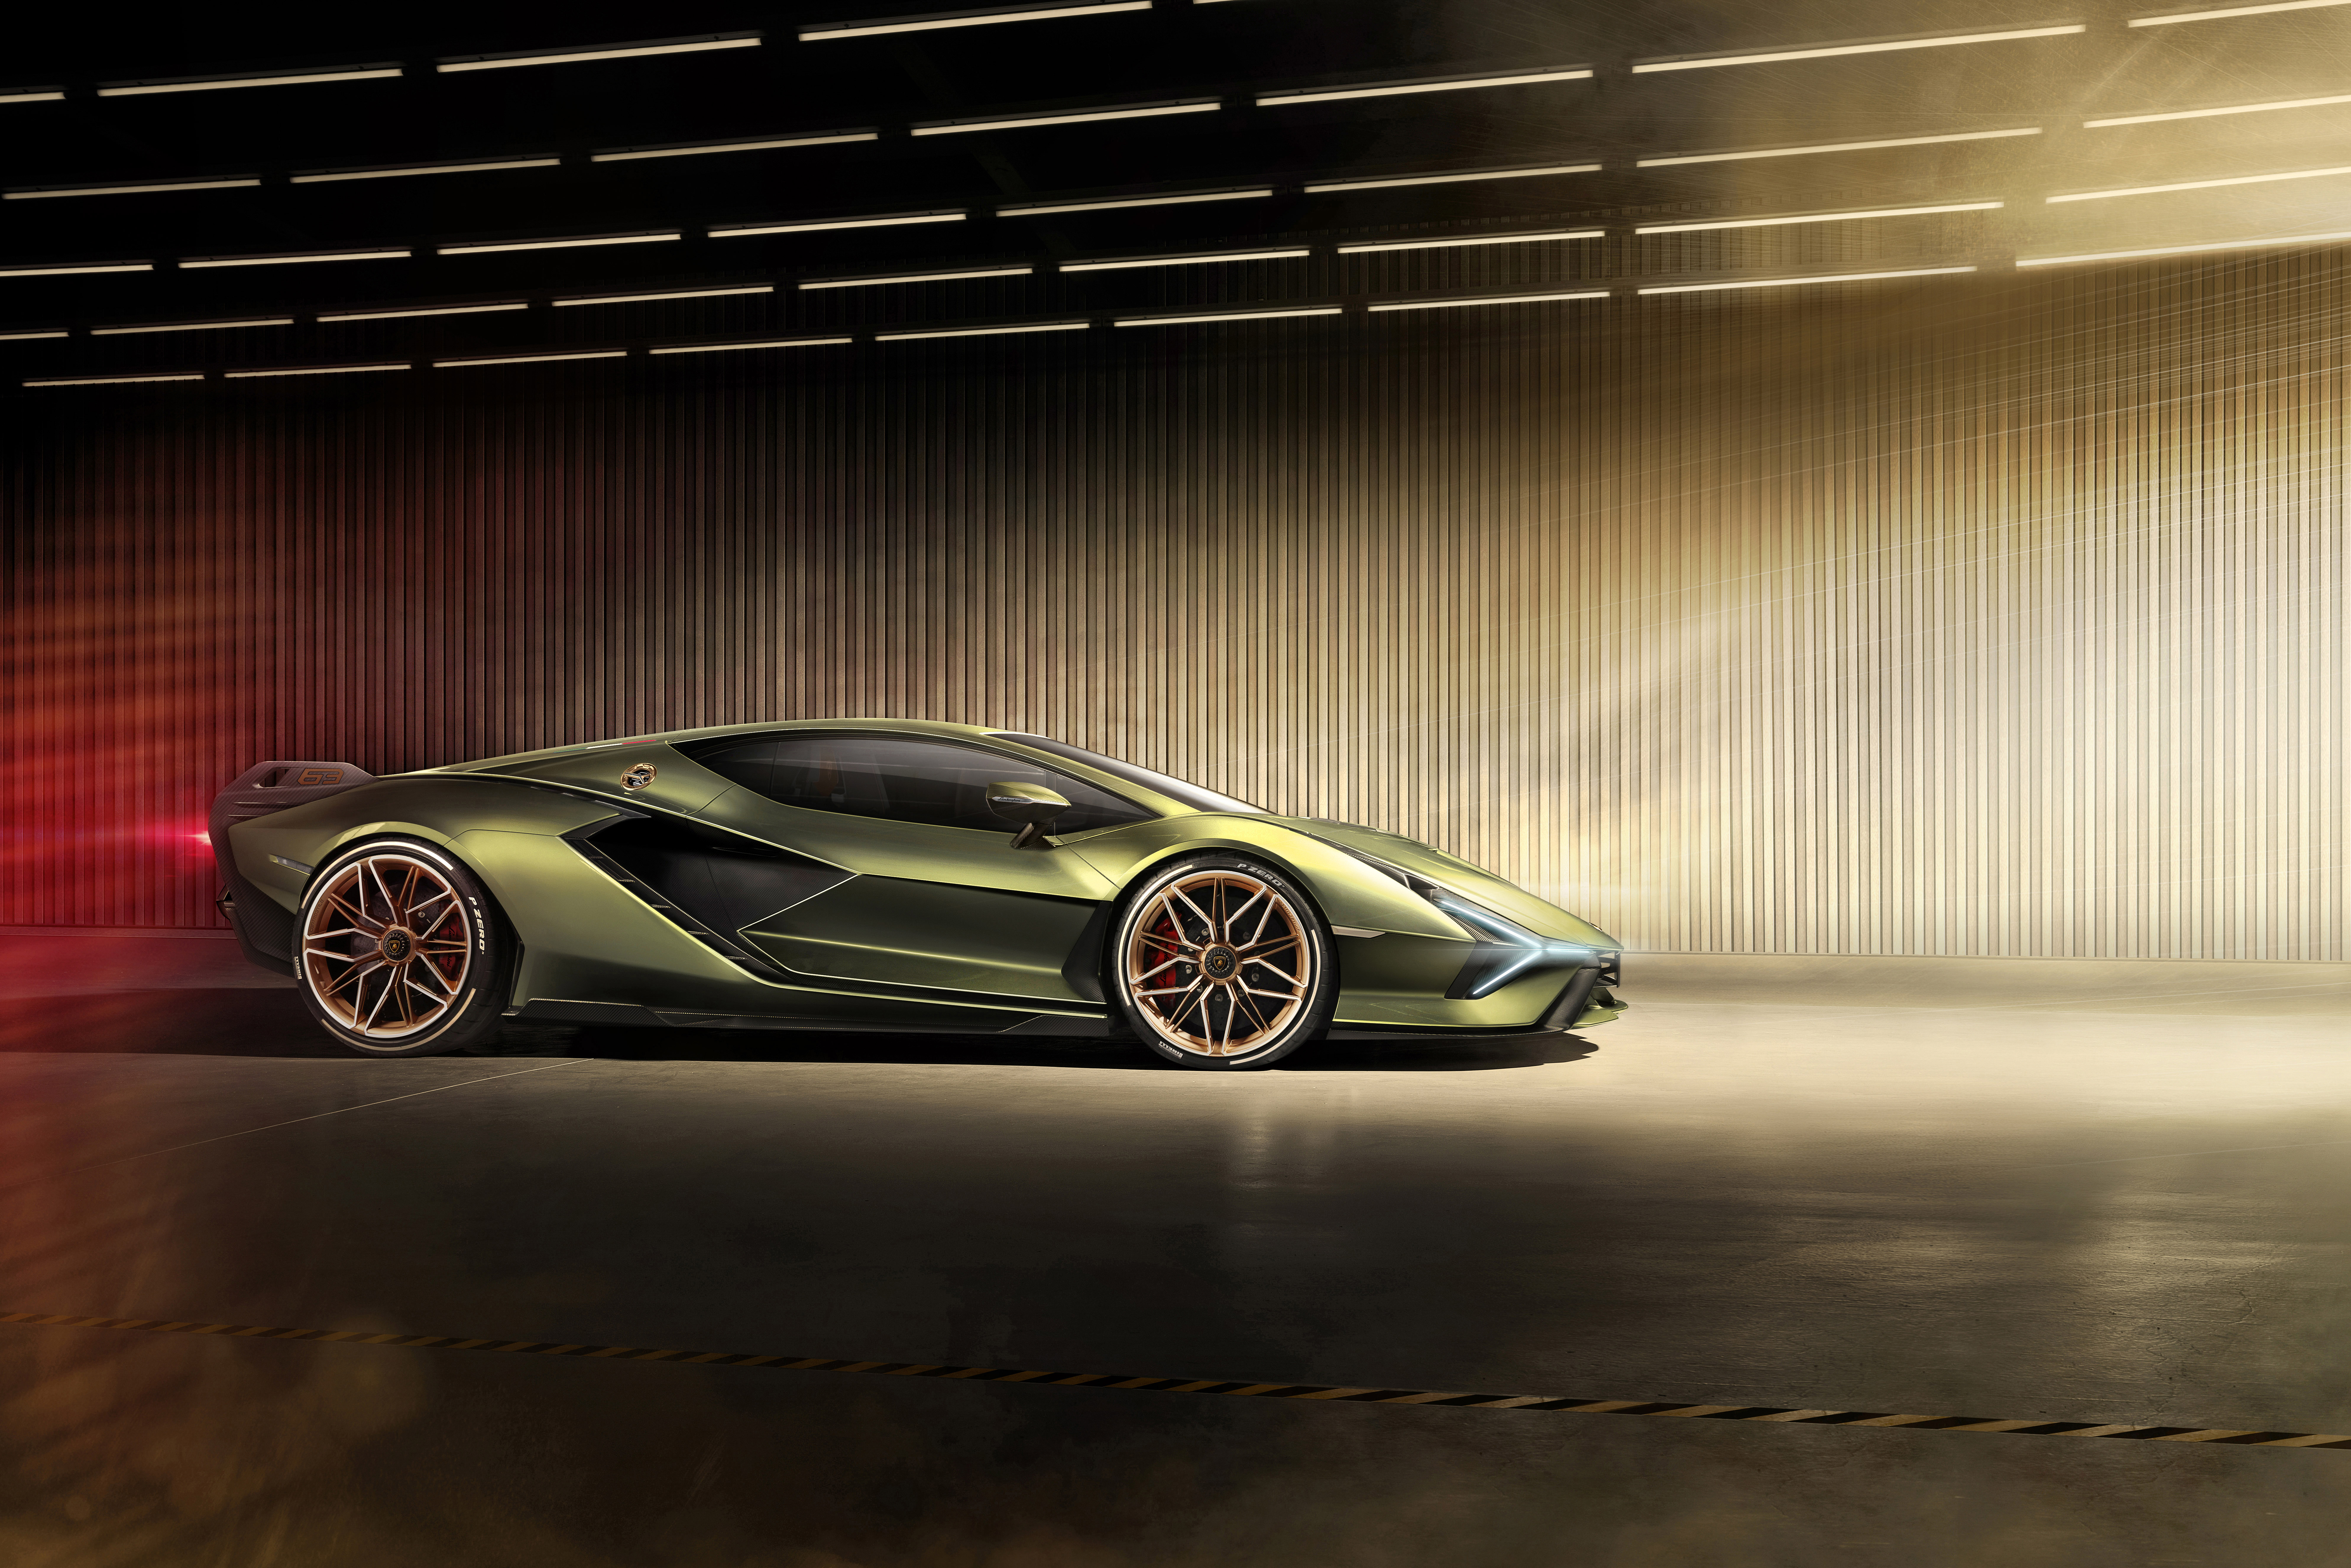 2019 Lamborghini Sian Side View, HD Cars, 4k Wallpapers, Images